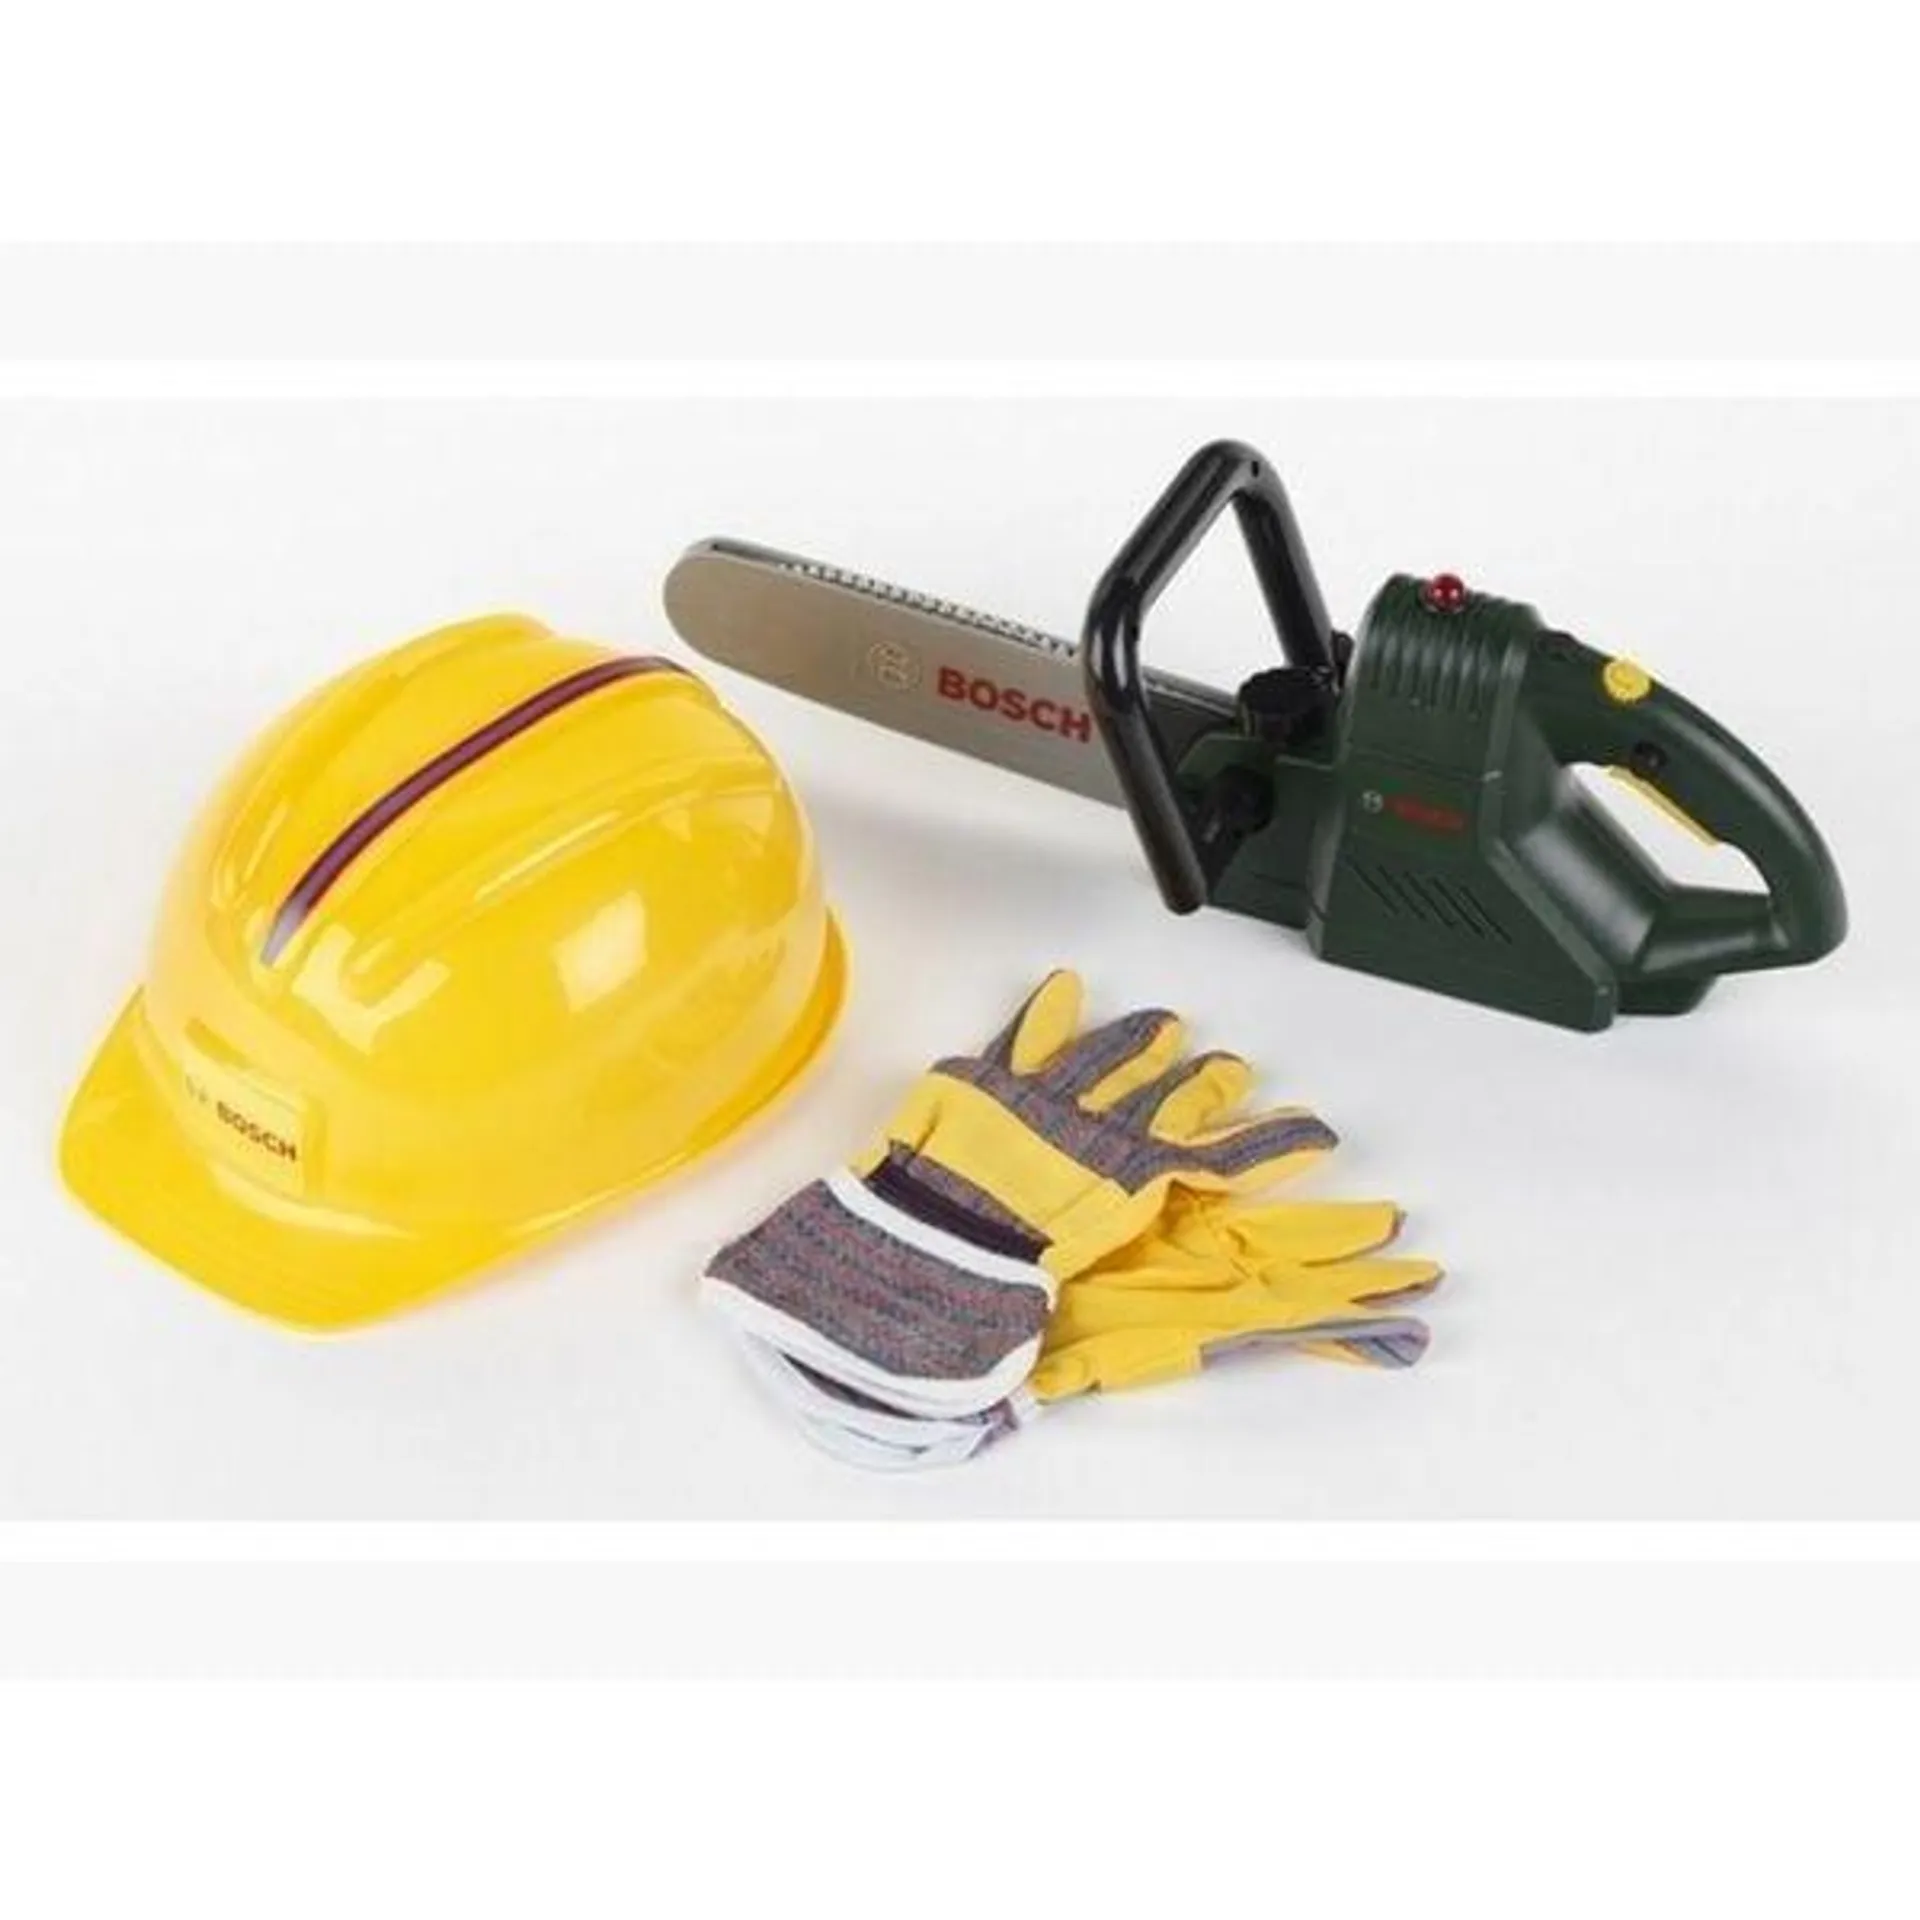 Bosch Chain Saw with Helmet & Work Gloves